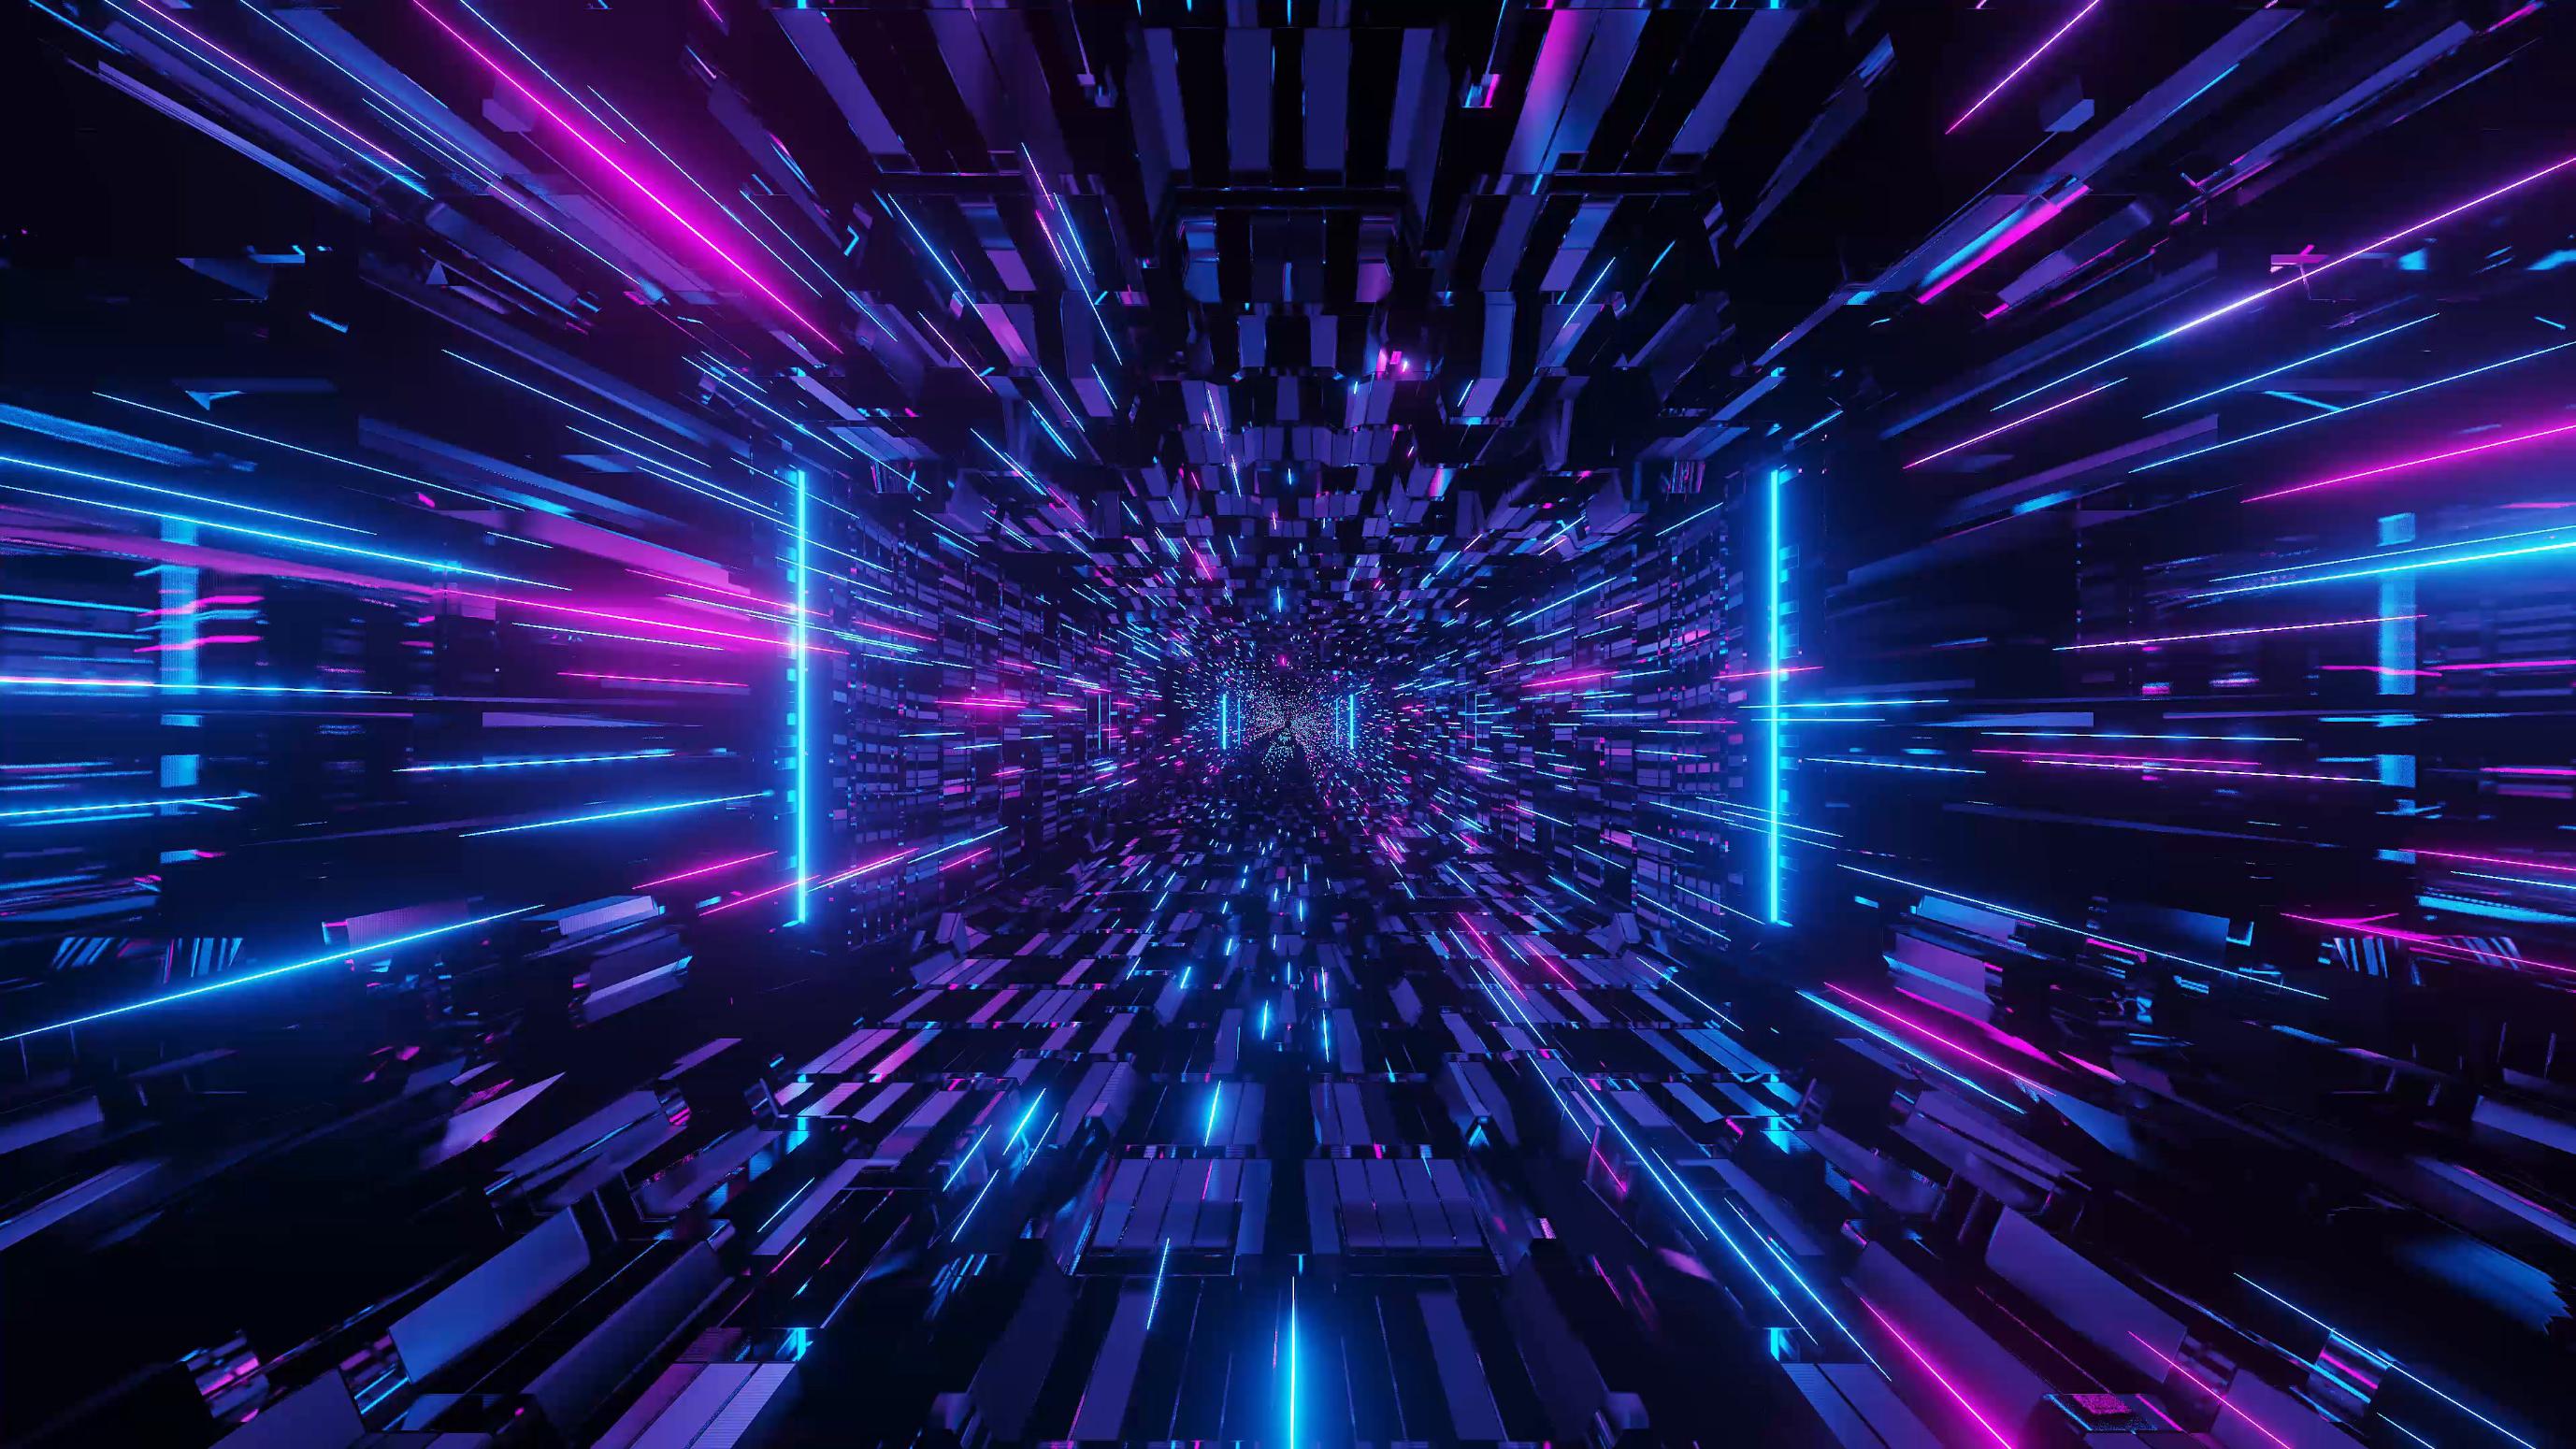 3d-illustration-blue-purple-futuristic-sci-fi-techno-lights-cool-background_66848a62-8850-4816-a972-181de8fef8c4.jpg